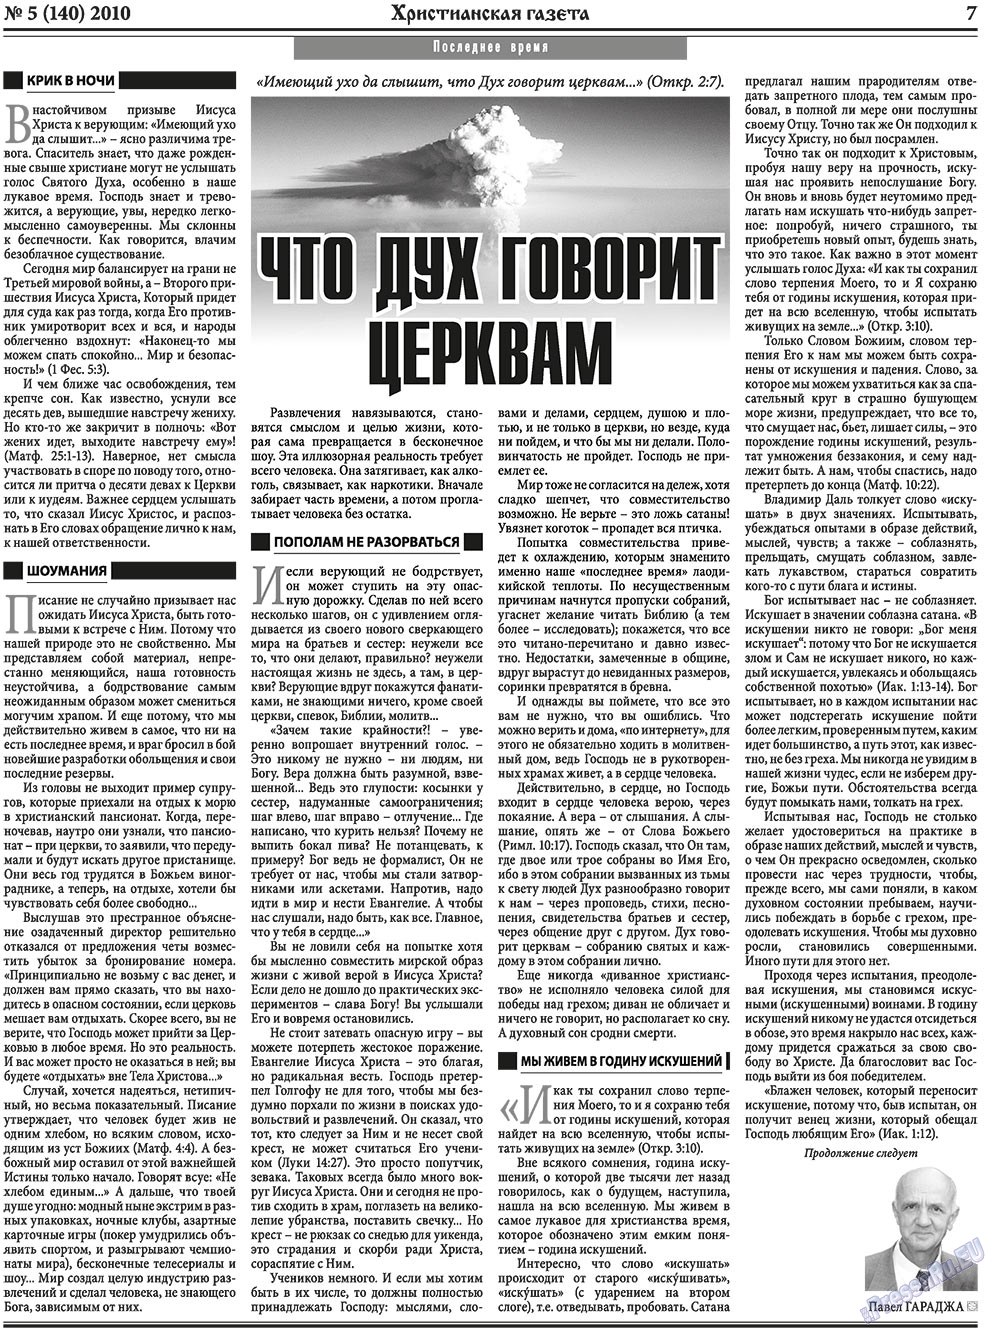 Христианская газета, газета. 2010 №5 стр.7